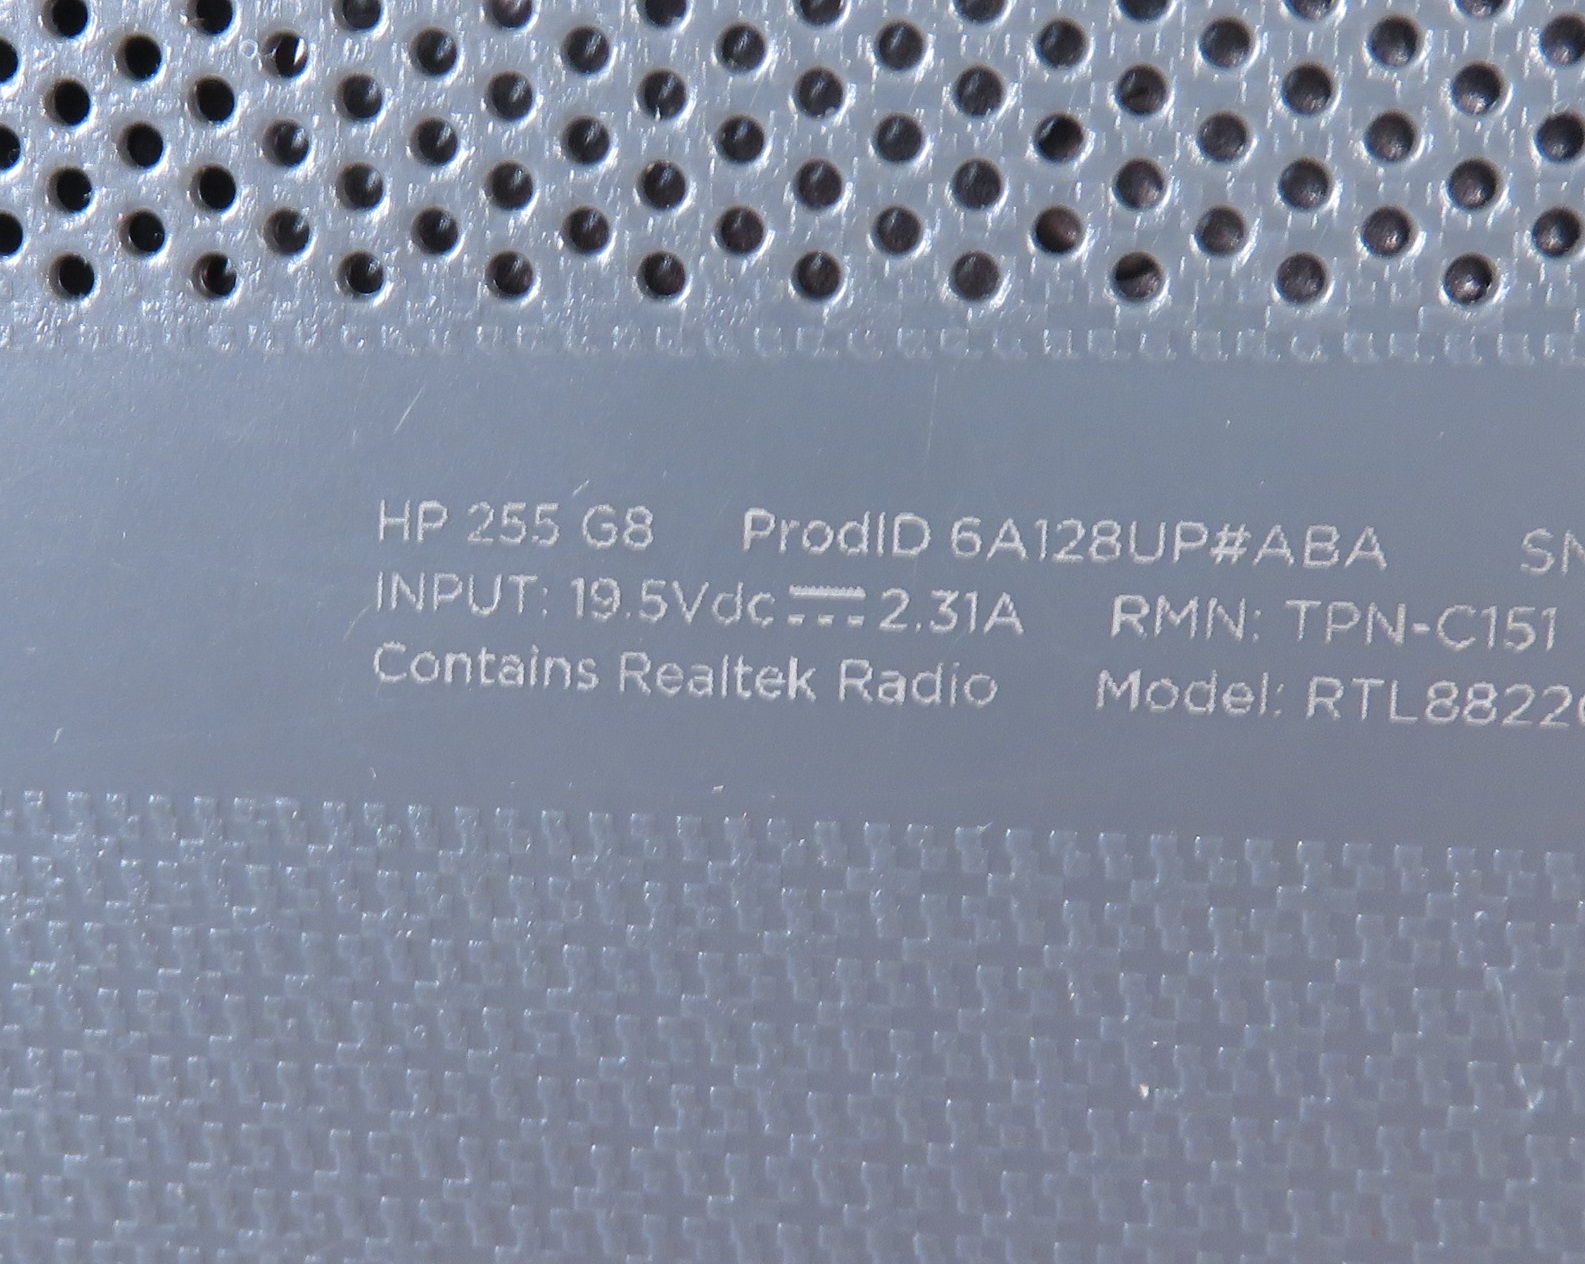 Desktop HP All-in-one 205 G8 - AMD Ryzen 5 Processor, 8GB Ram